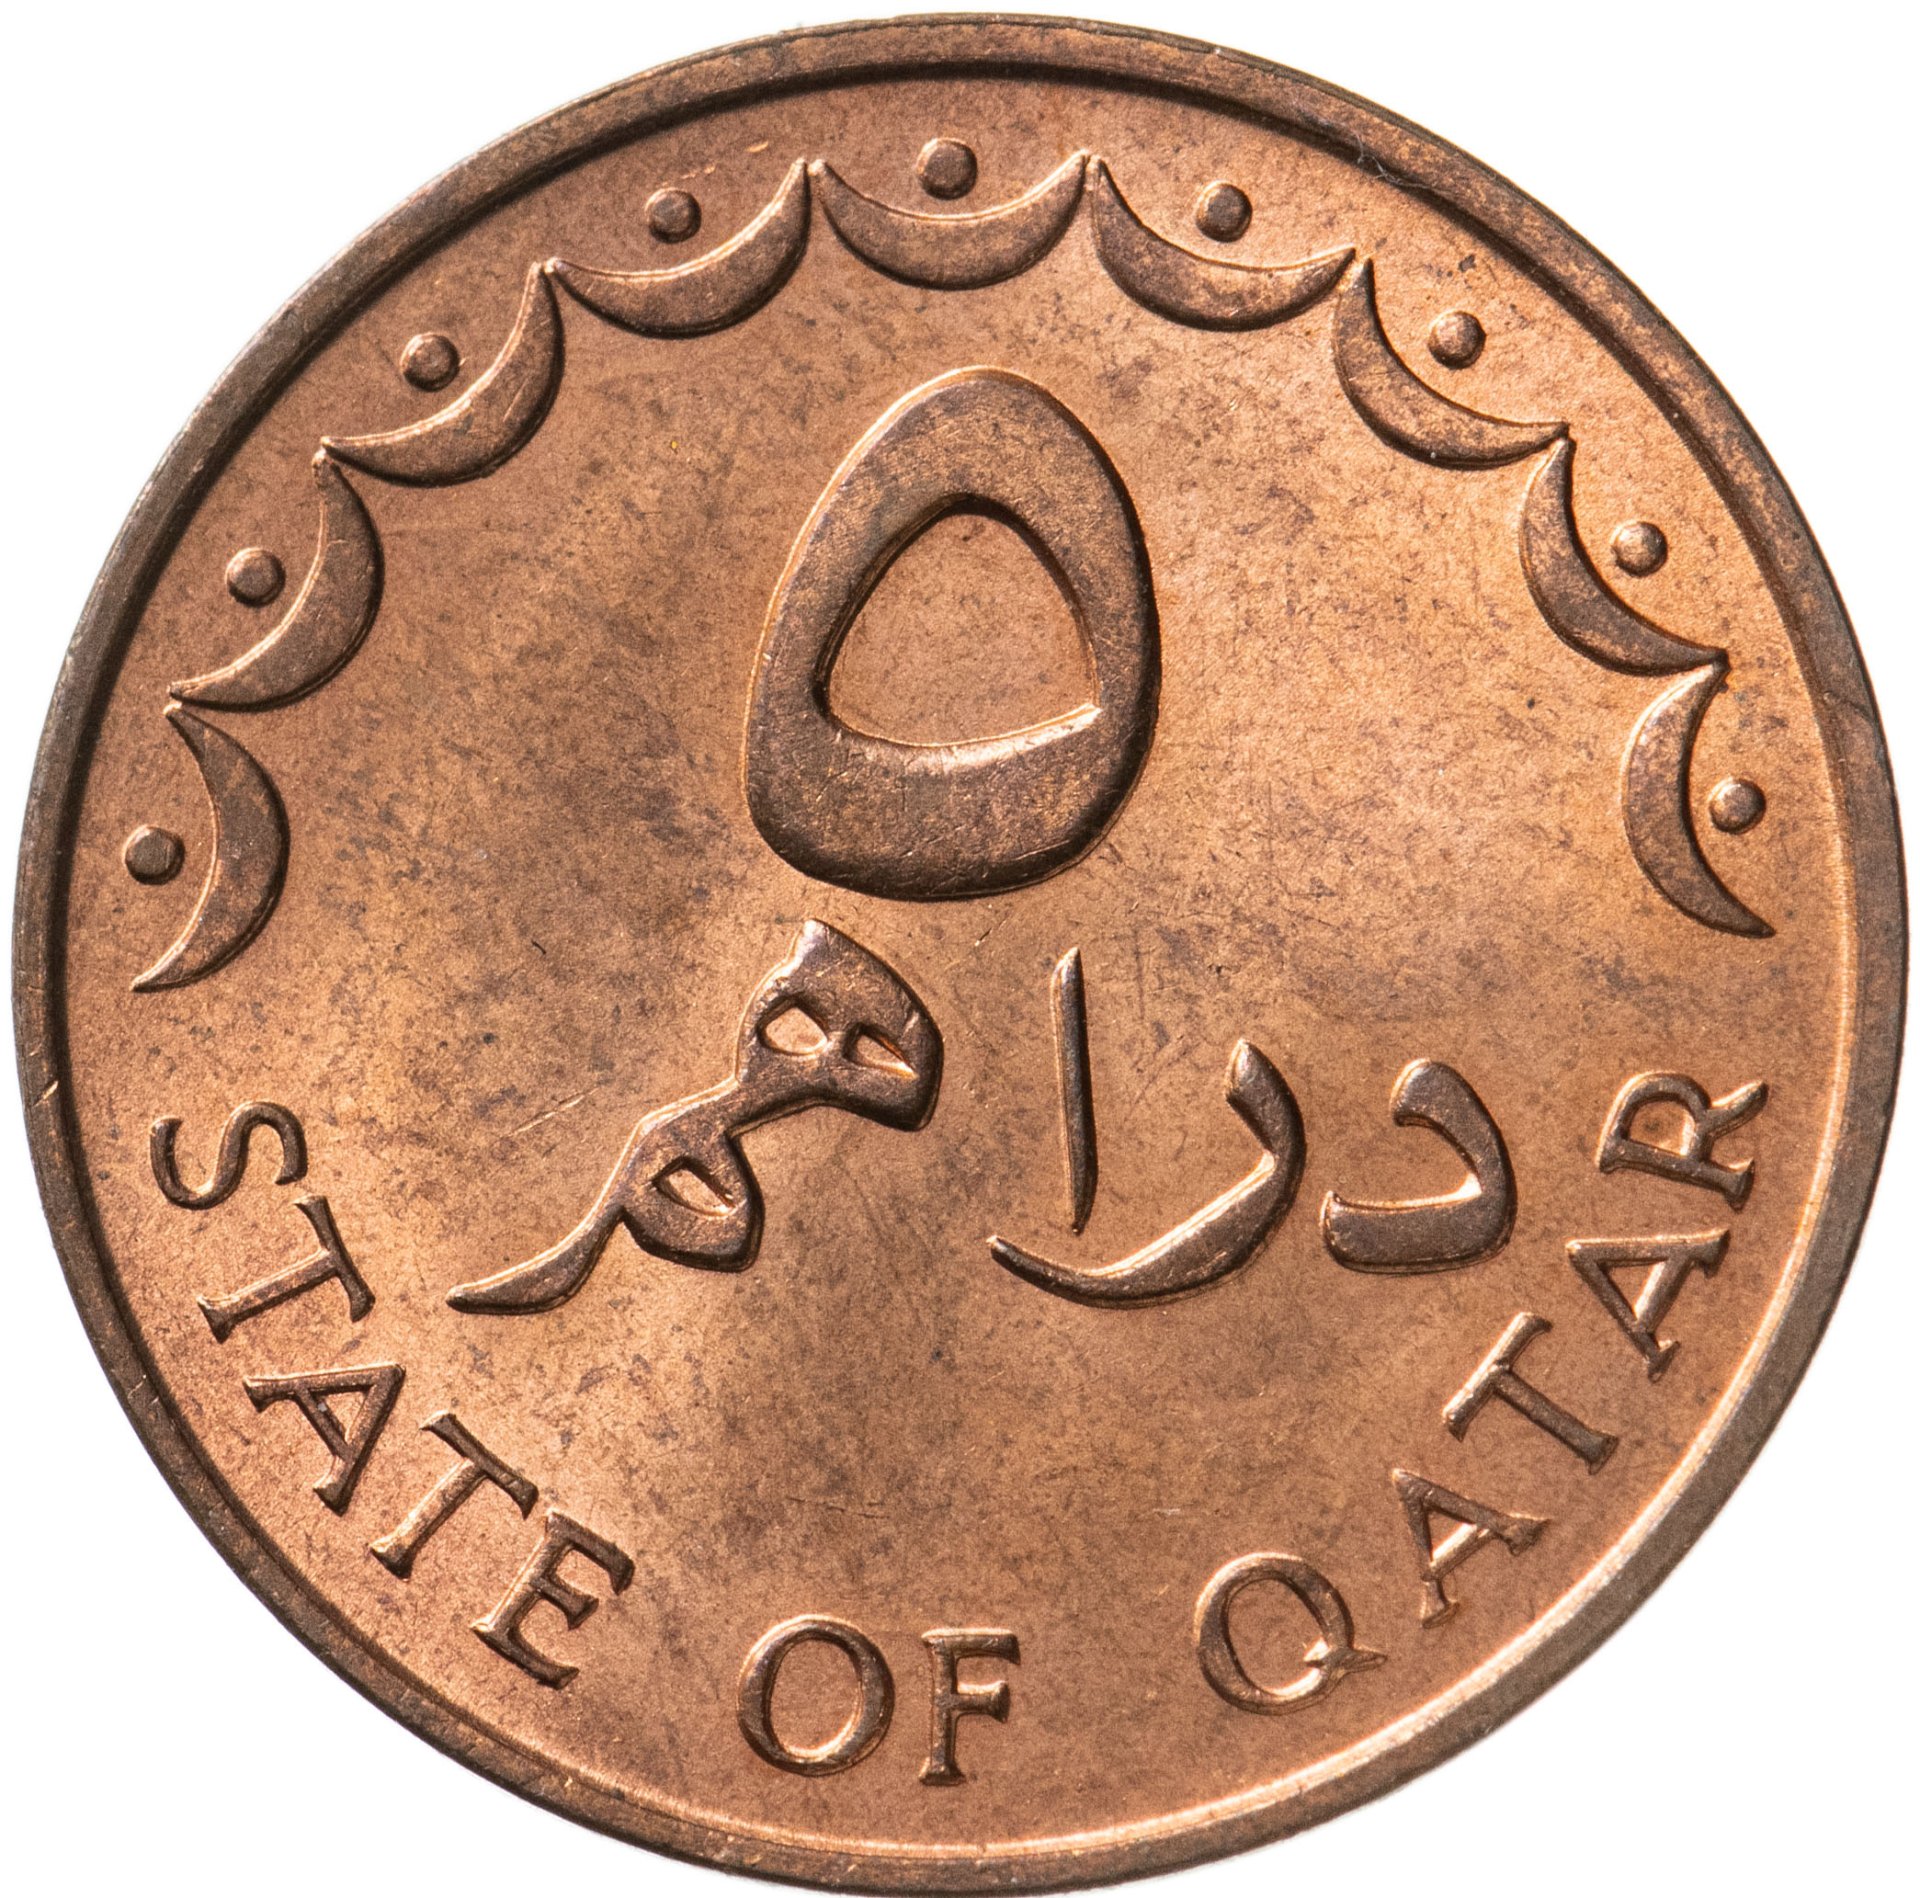 130 дирхам. Монеты Катара. Монеты Катара каталог. Миллион марокканских дирхам.